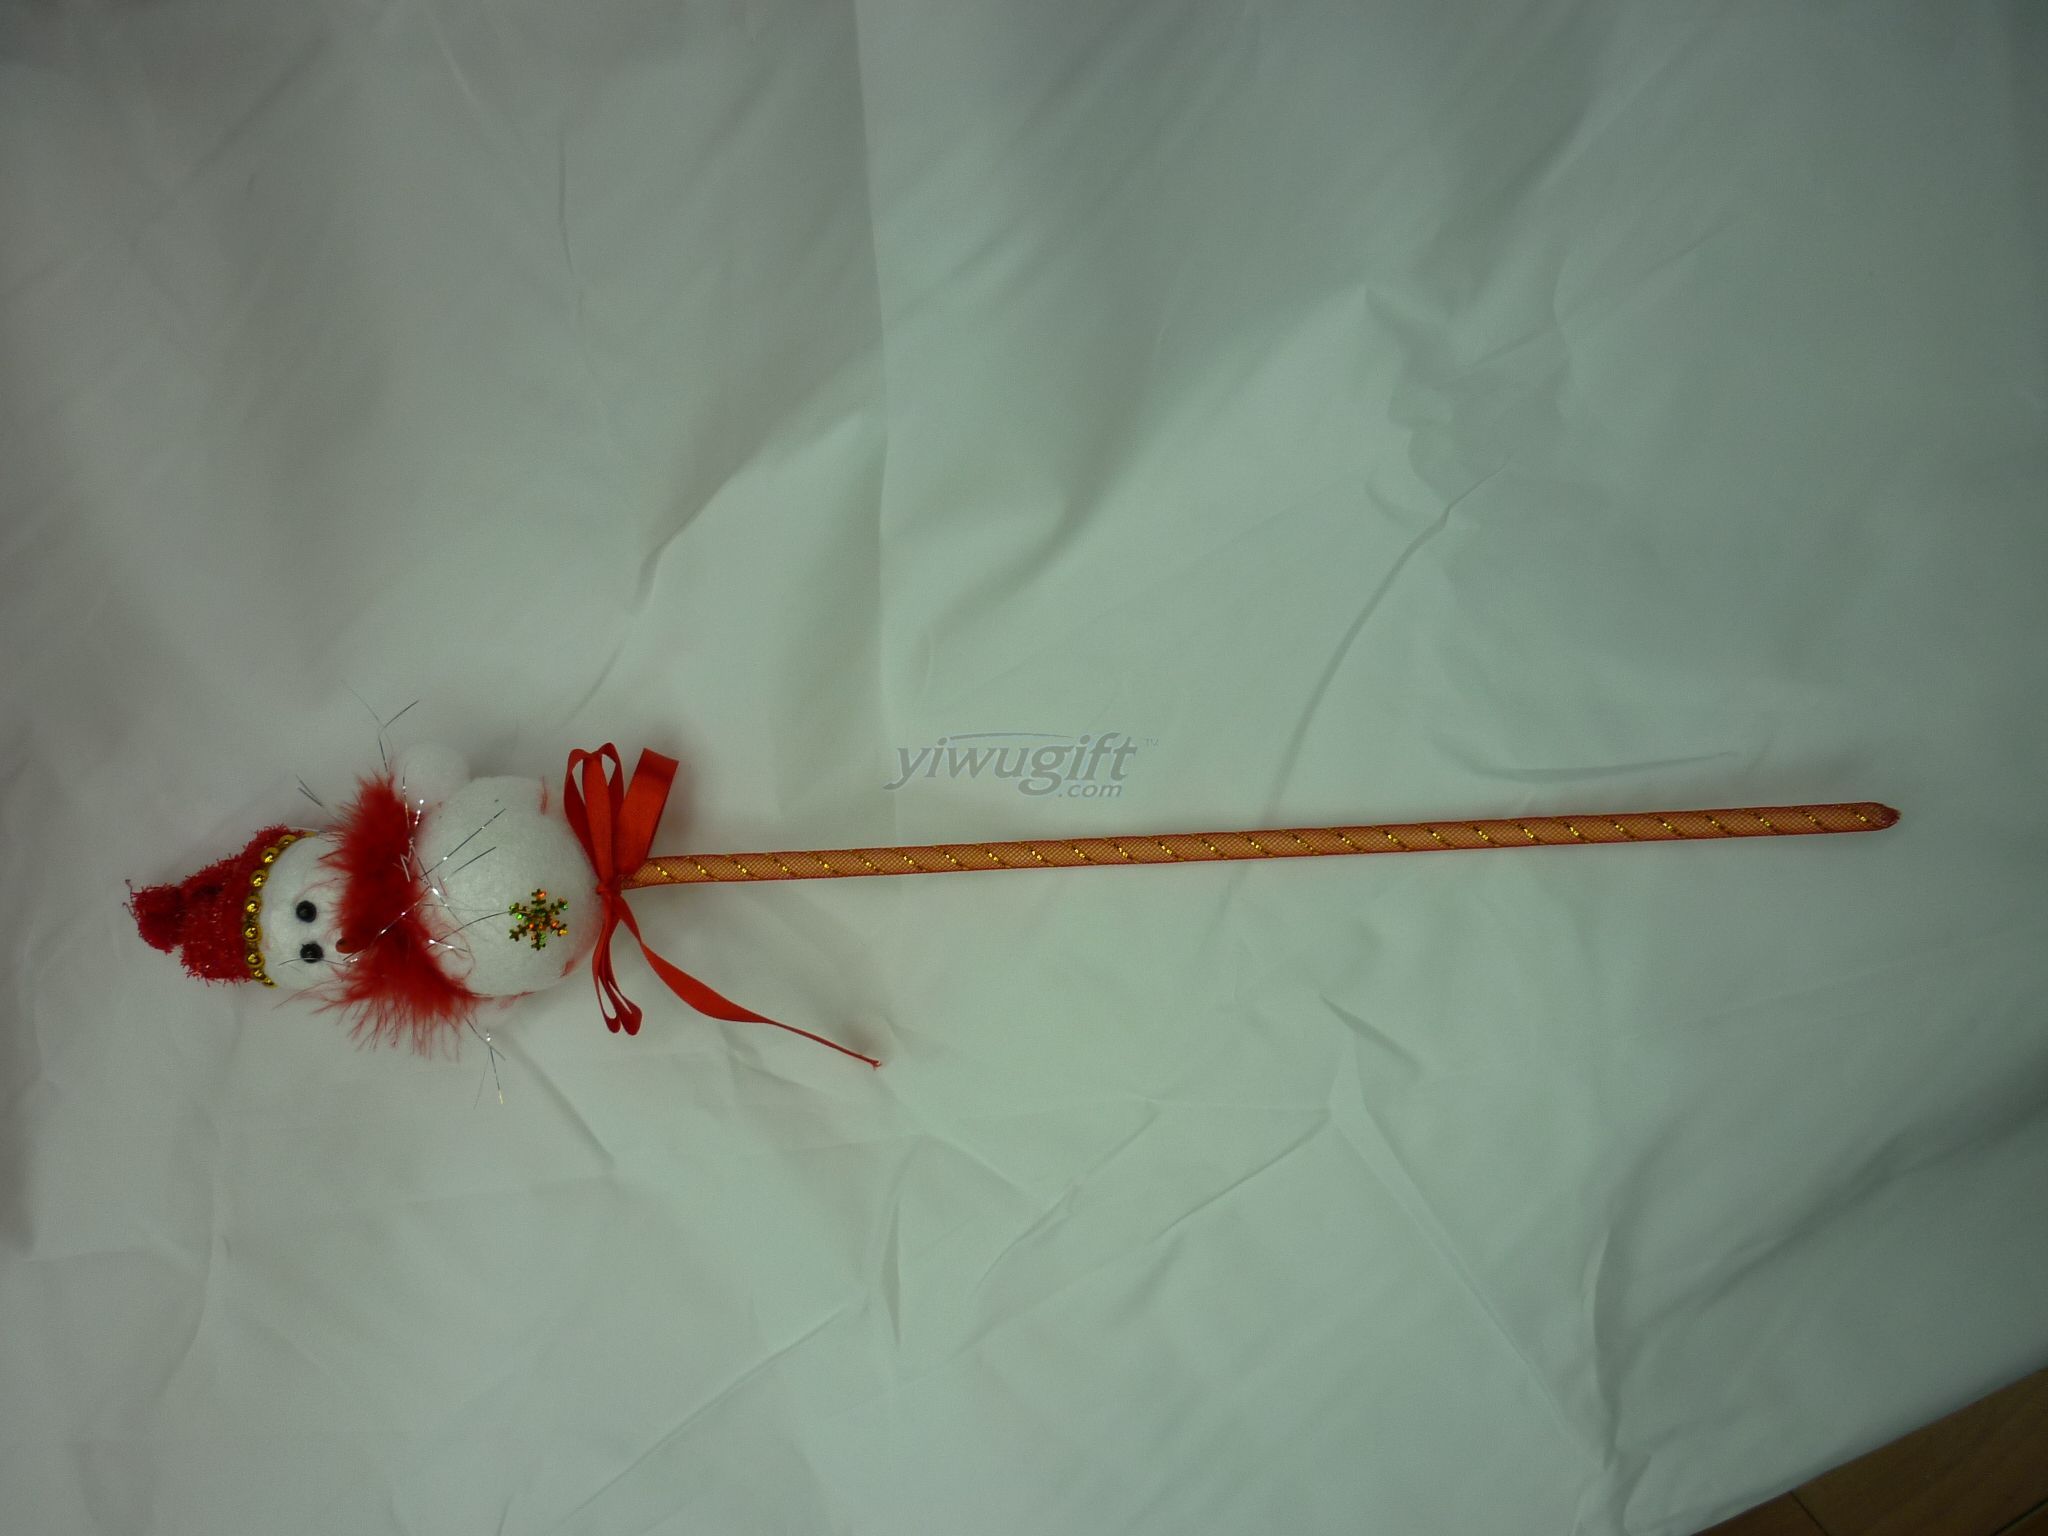 A snowman stick, picture